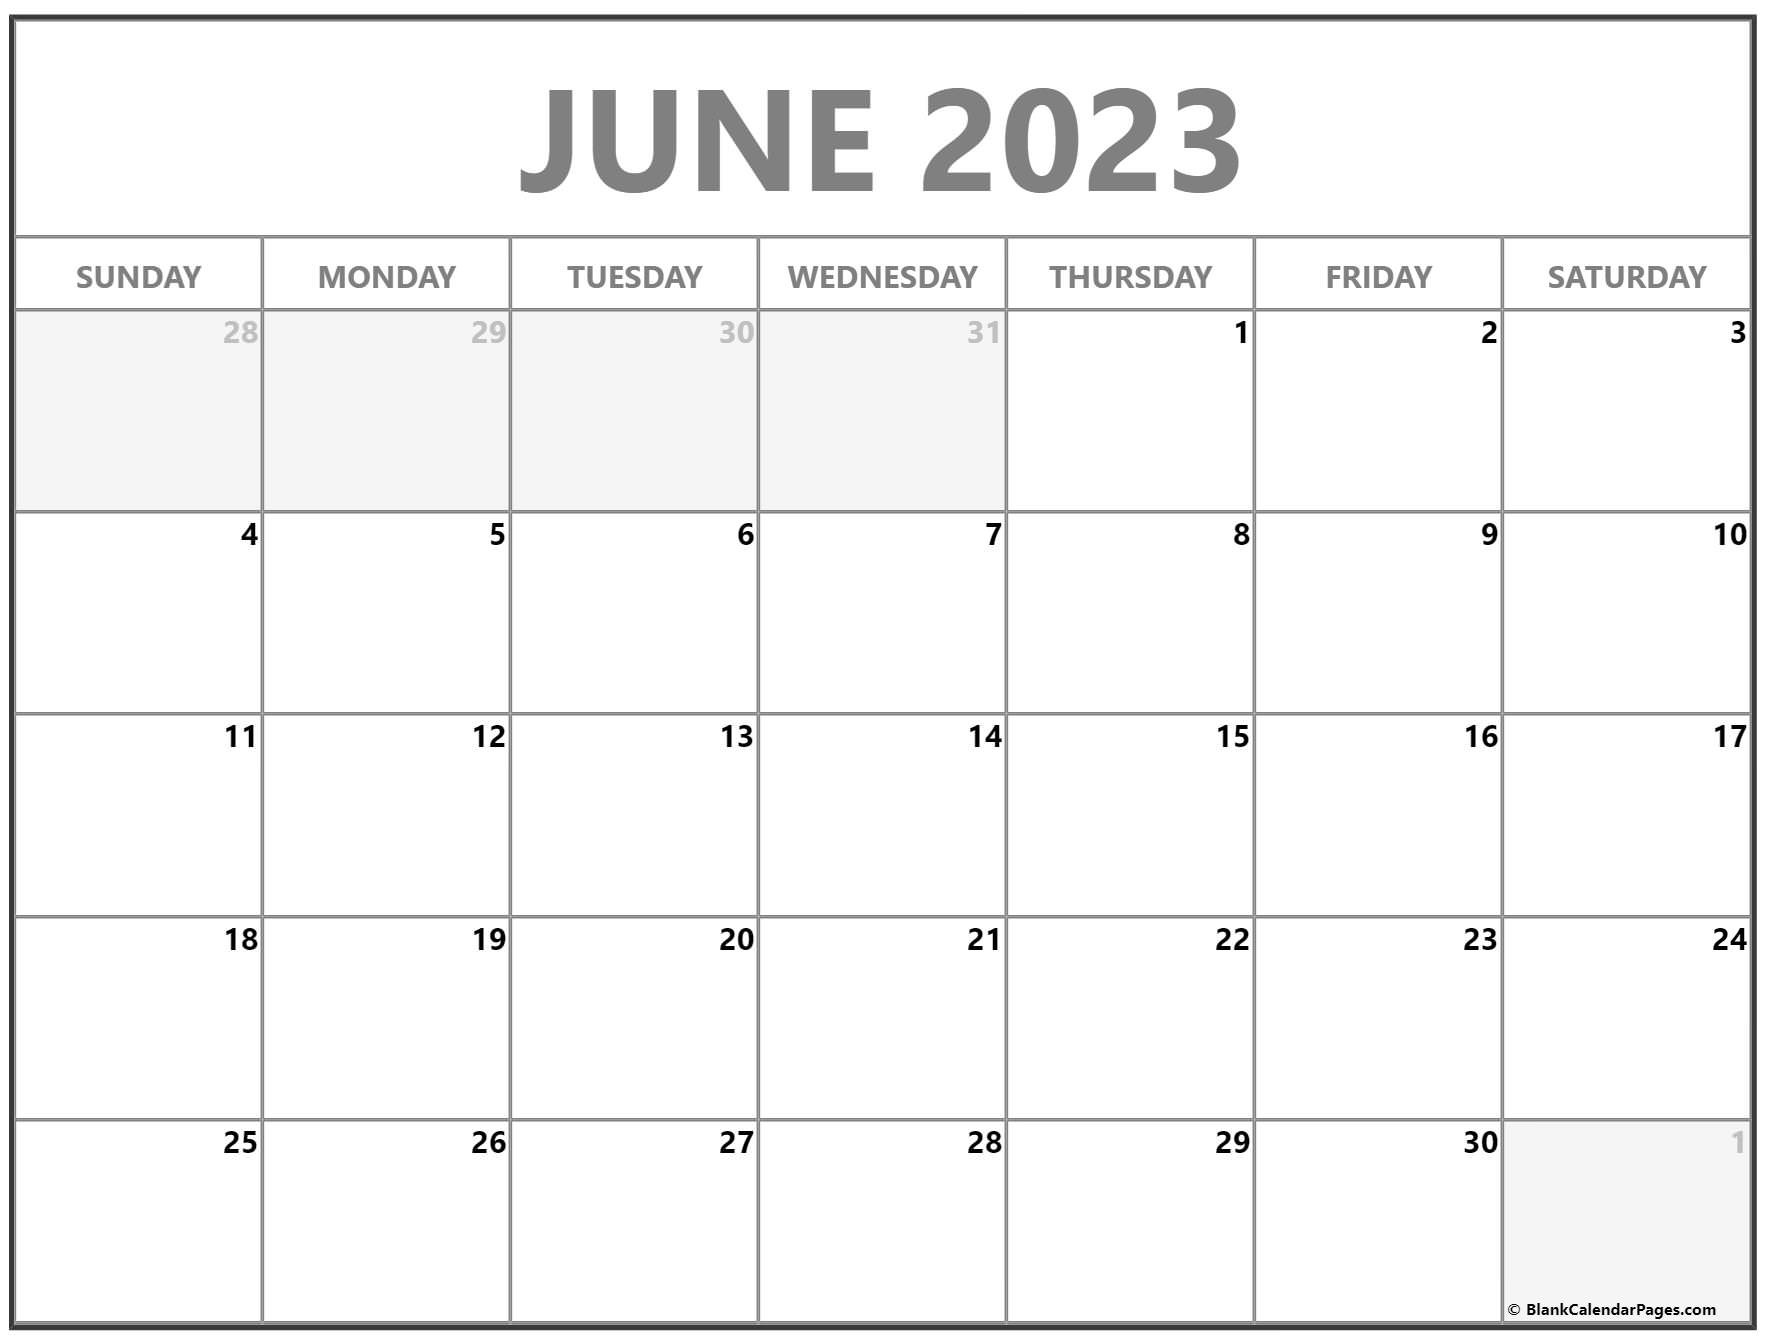 june 2023 calendar timeanddate